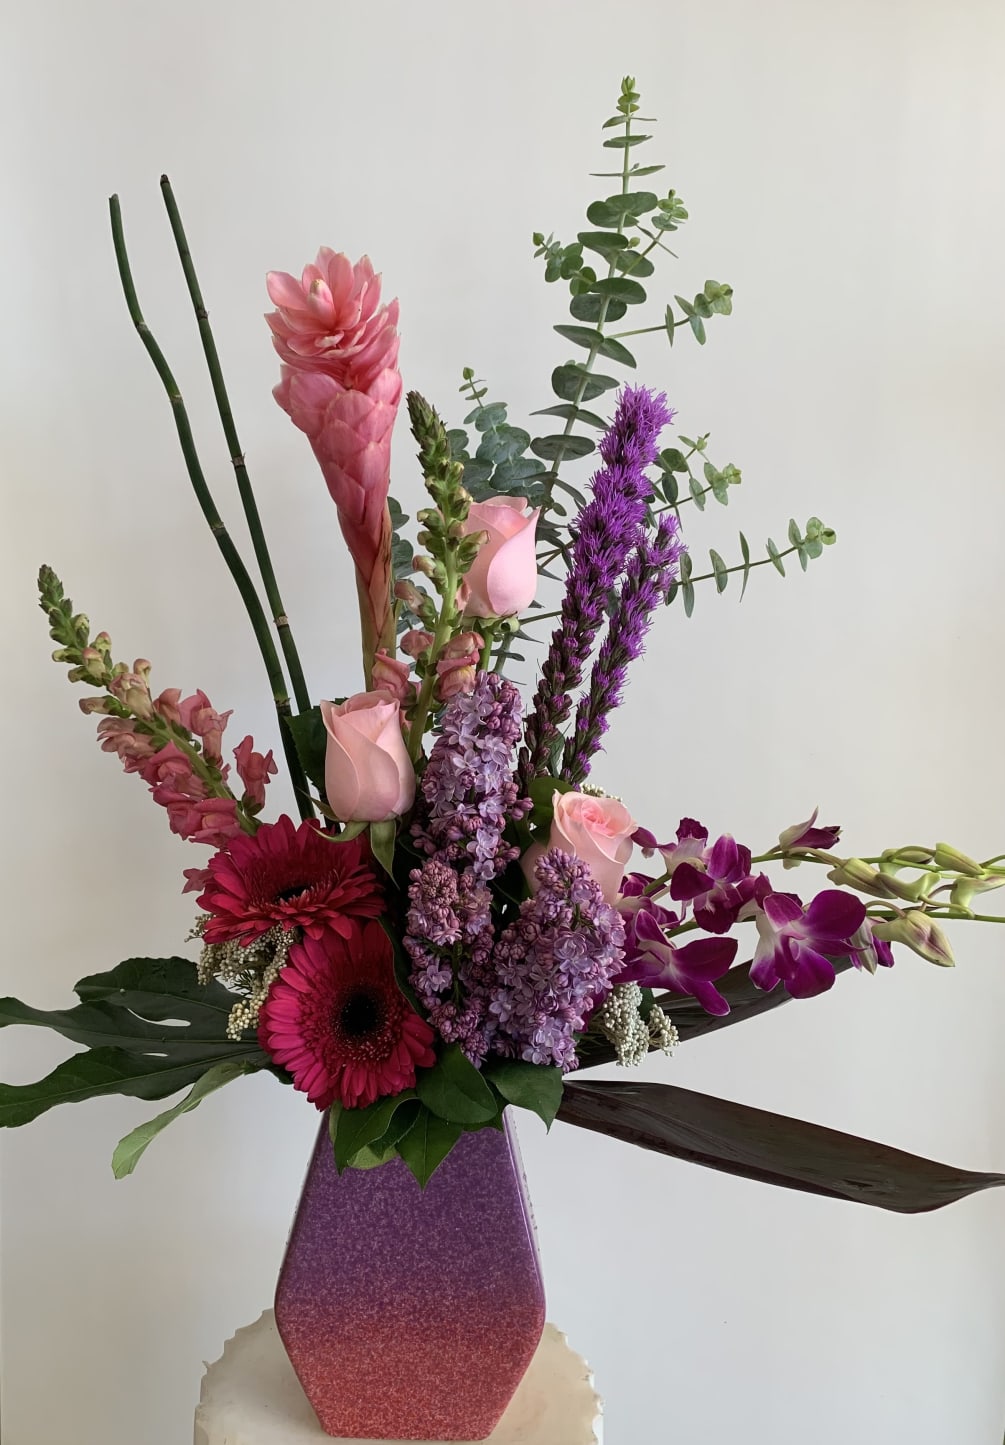 Simple elegant arranged in a beautiful ceremic vase